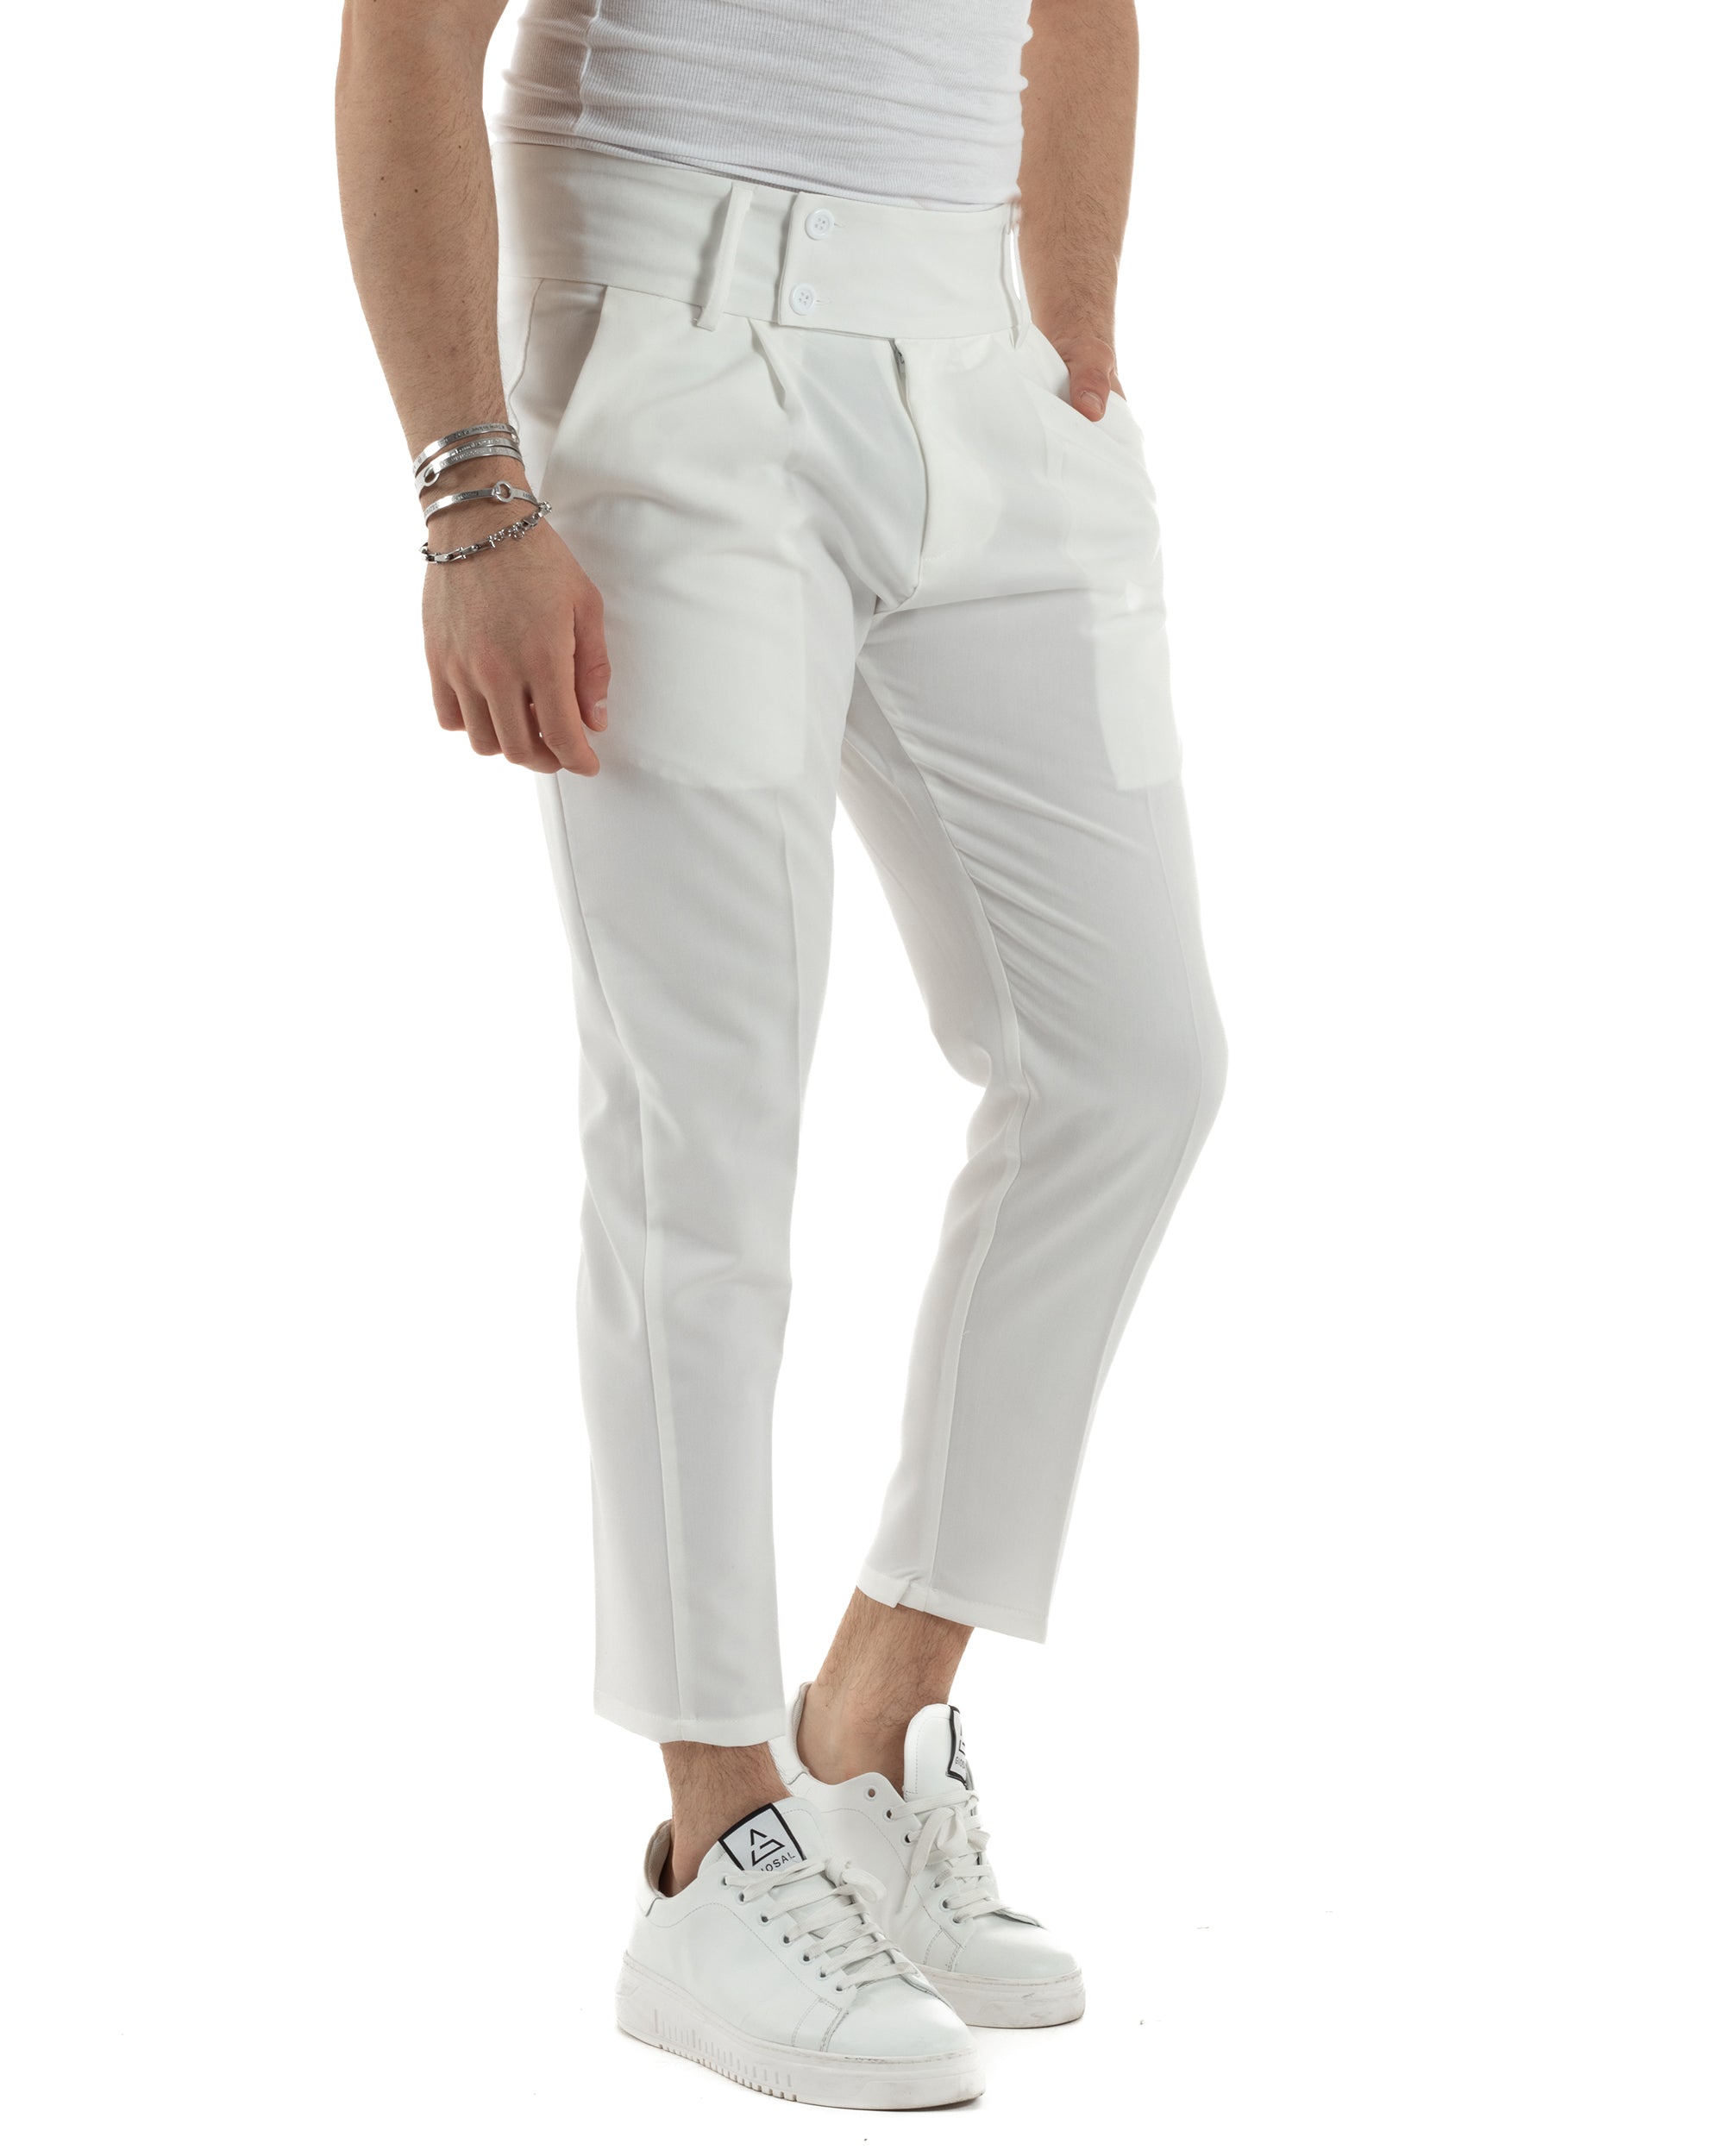 Pantaloni Uomo Viscosa Tasca America Vita Alta Classico Pinces Abbottonatura Allungata Casual Bianco GIOSAL-P6047A